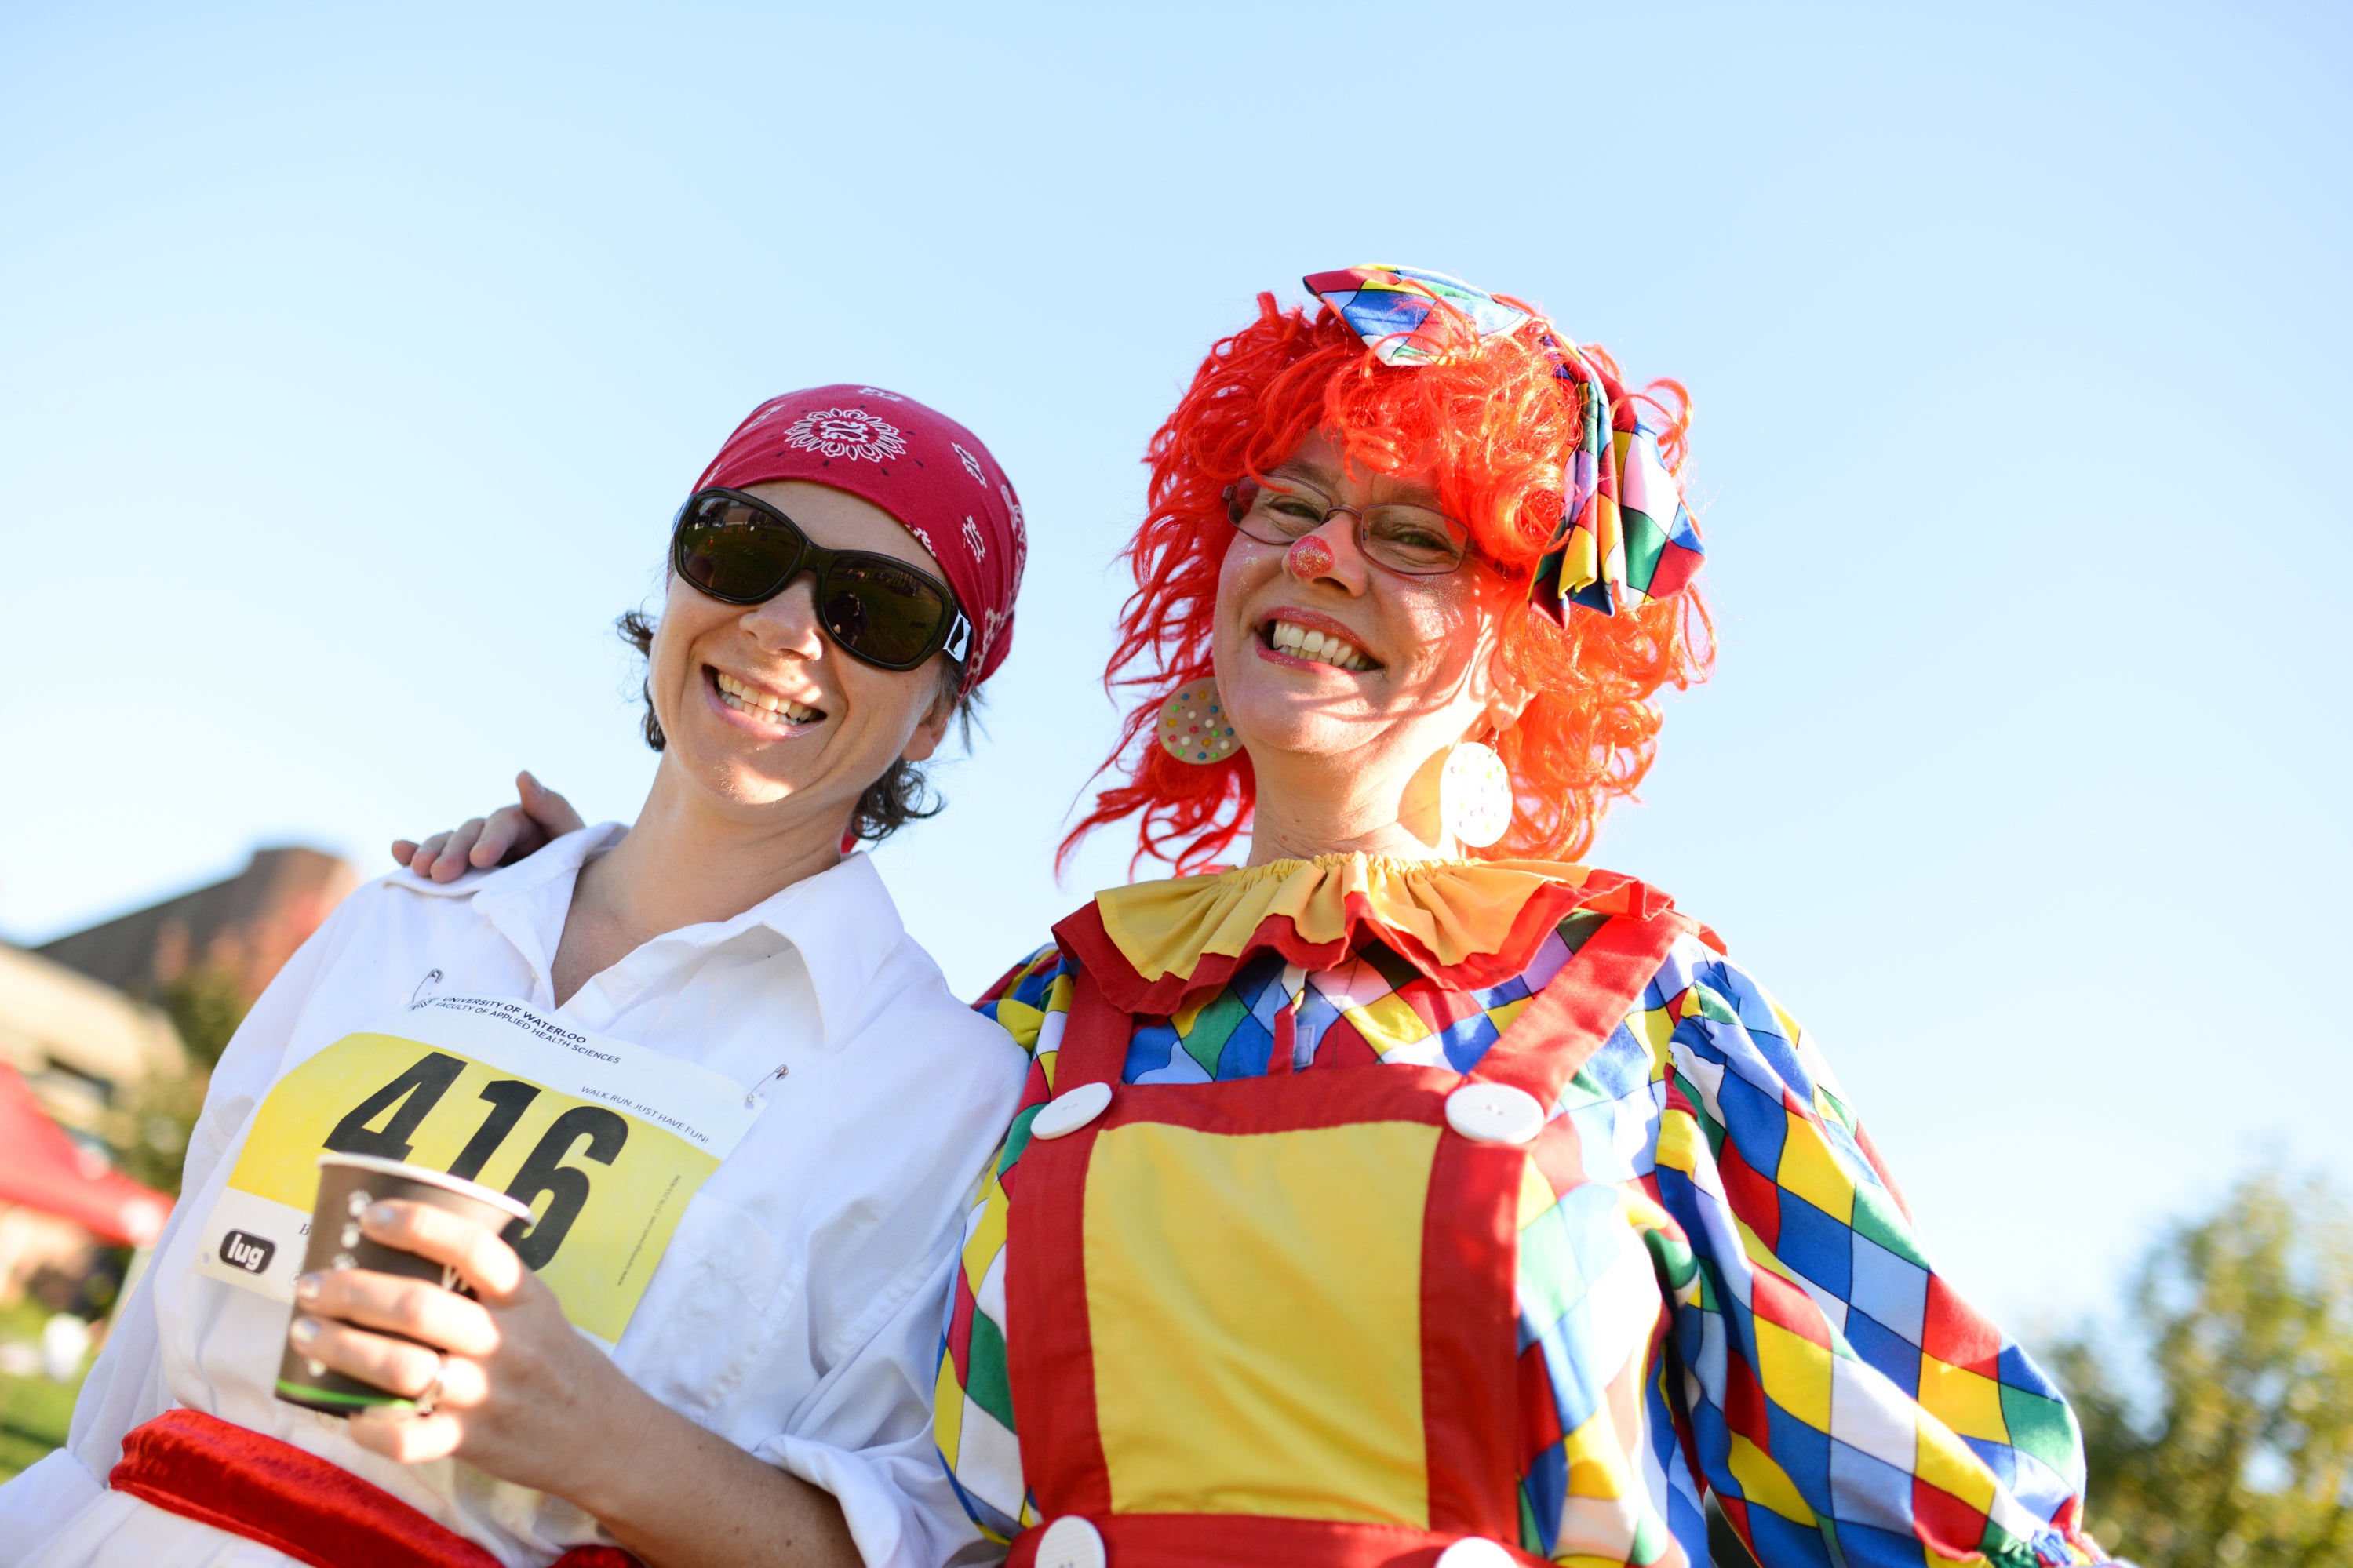 Clown and Fun Run participant